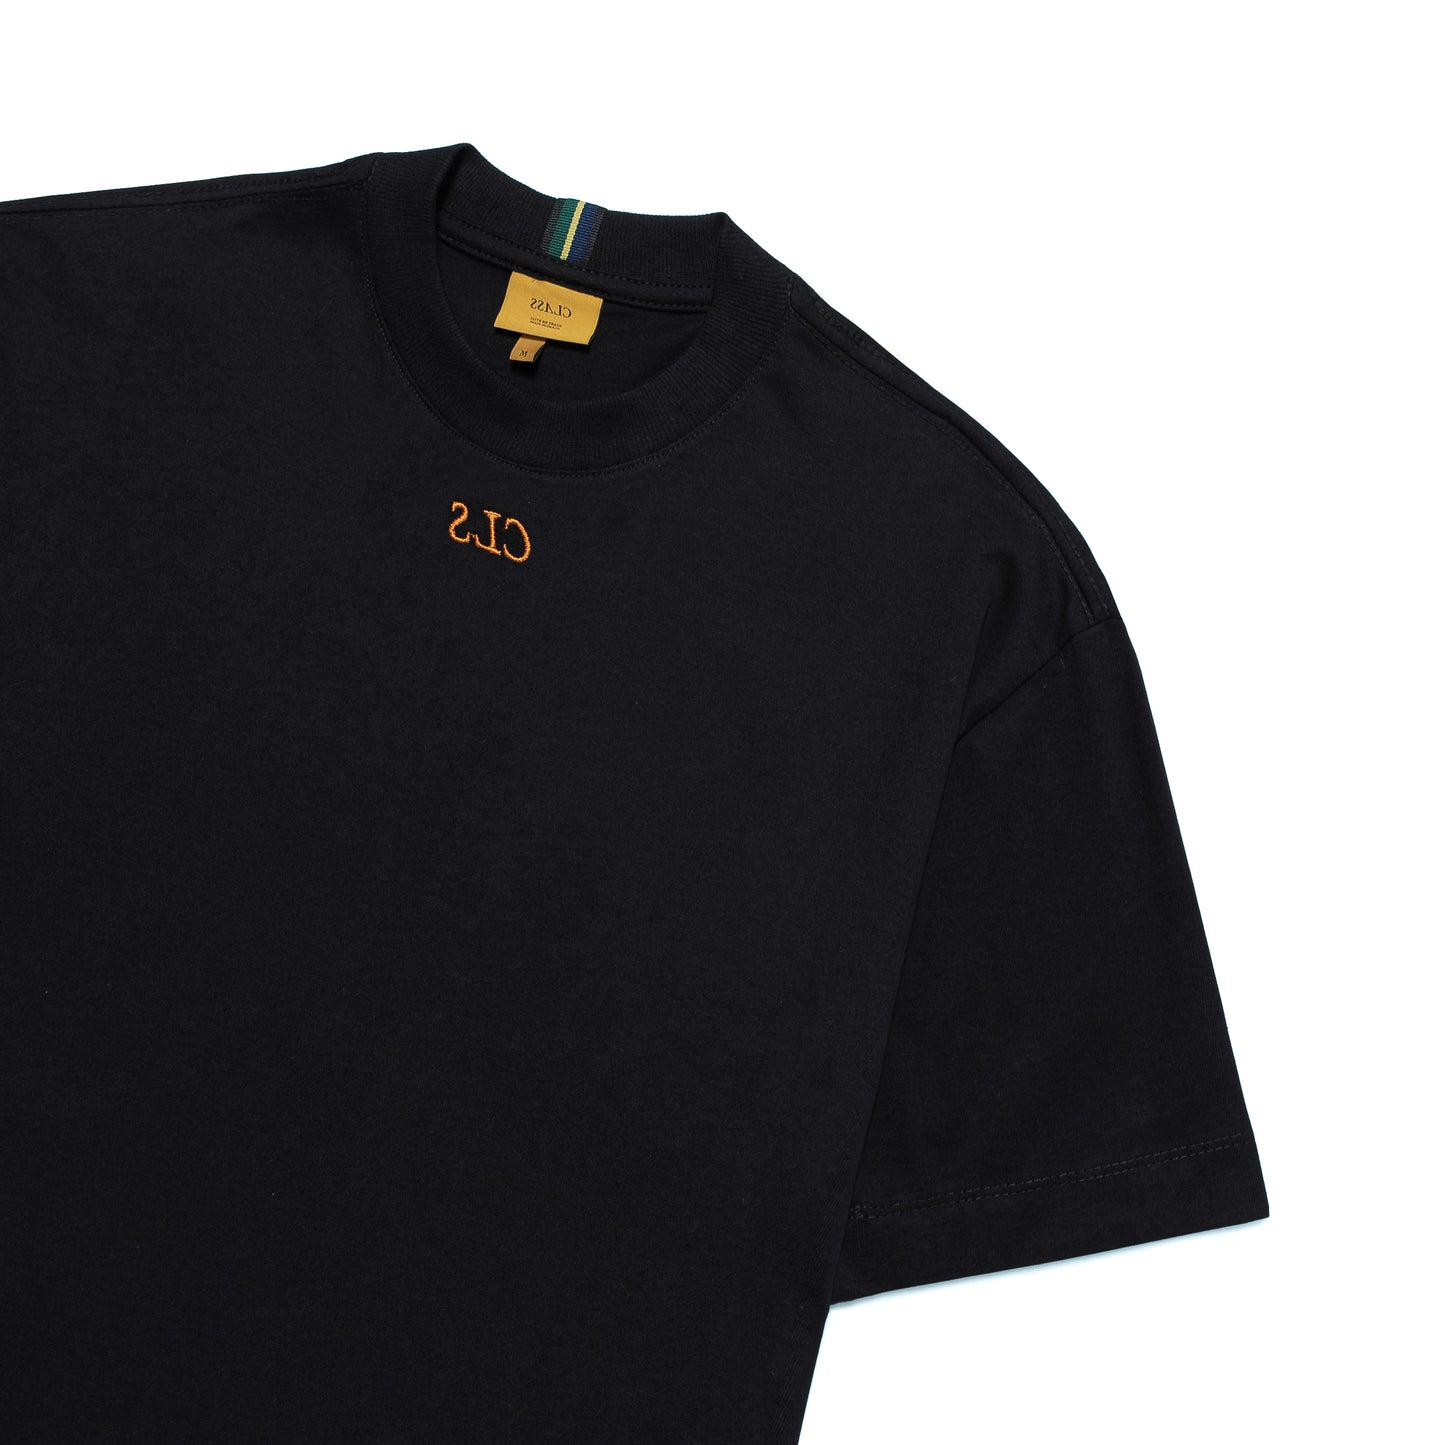 T-Shirt "Mini CLS" Black